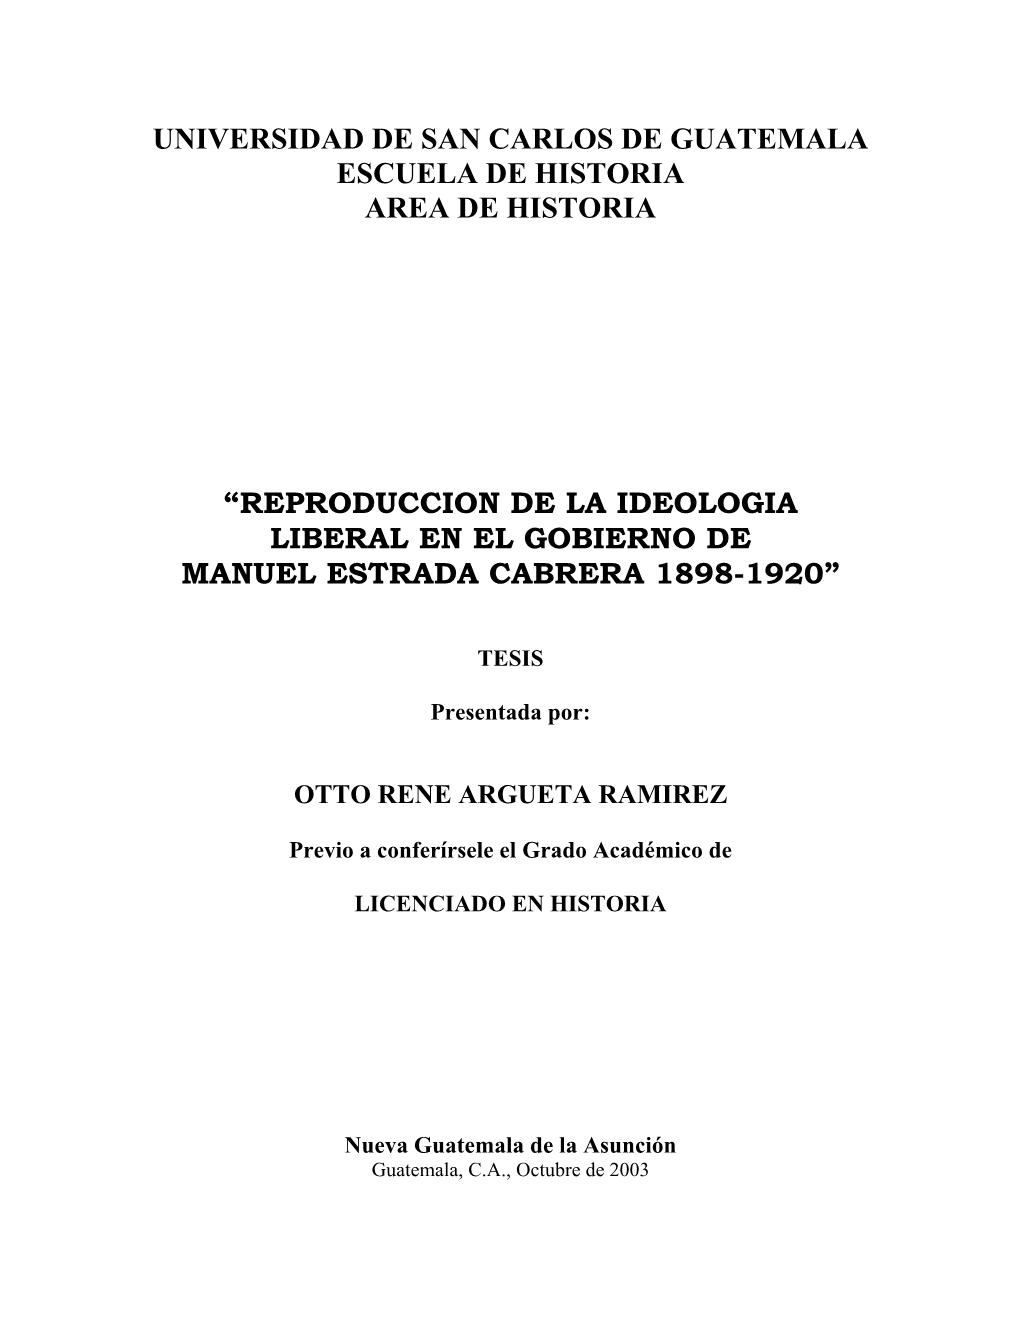 Reproduccion De La Ideologia Liberal En El Gobierno De Manuel Estrada Cabrera 1898-1920”